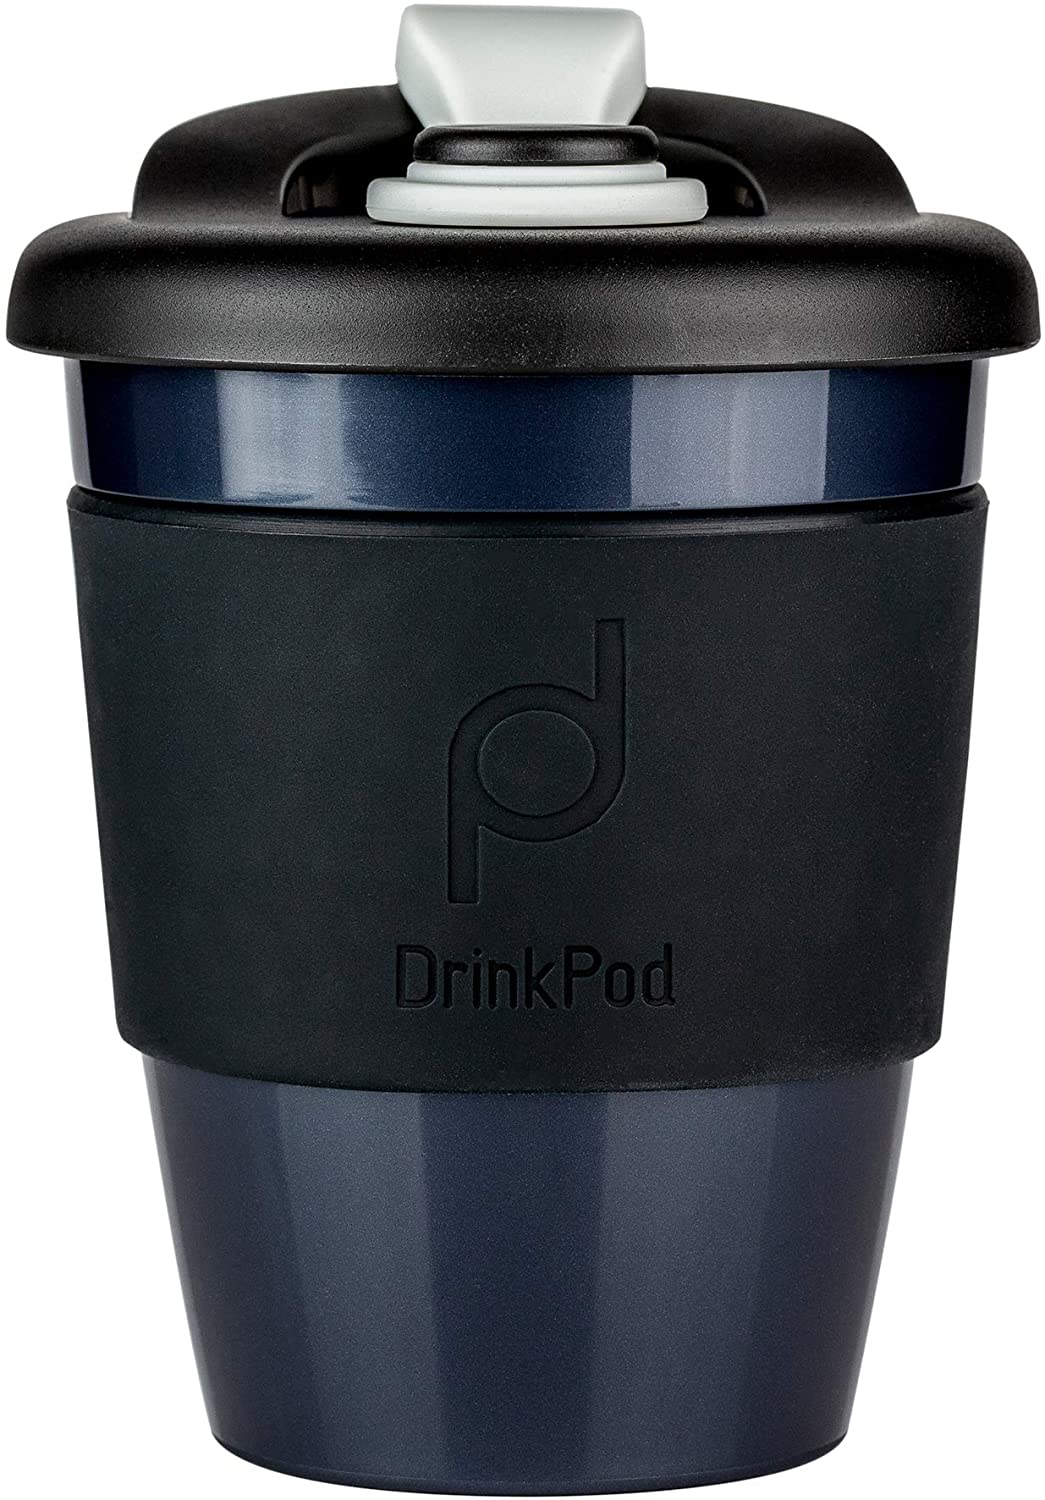 DrinkPod Reusable BPA Free 340ml 12oz Plastic Coffee Mug Travel Mug - NIGHT, BLACK